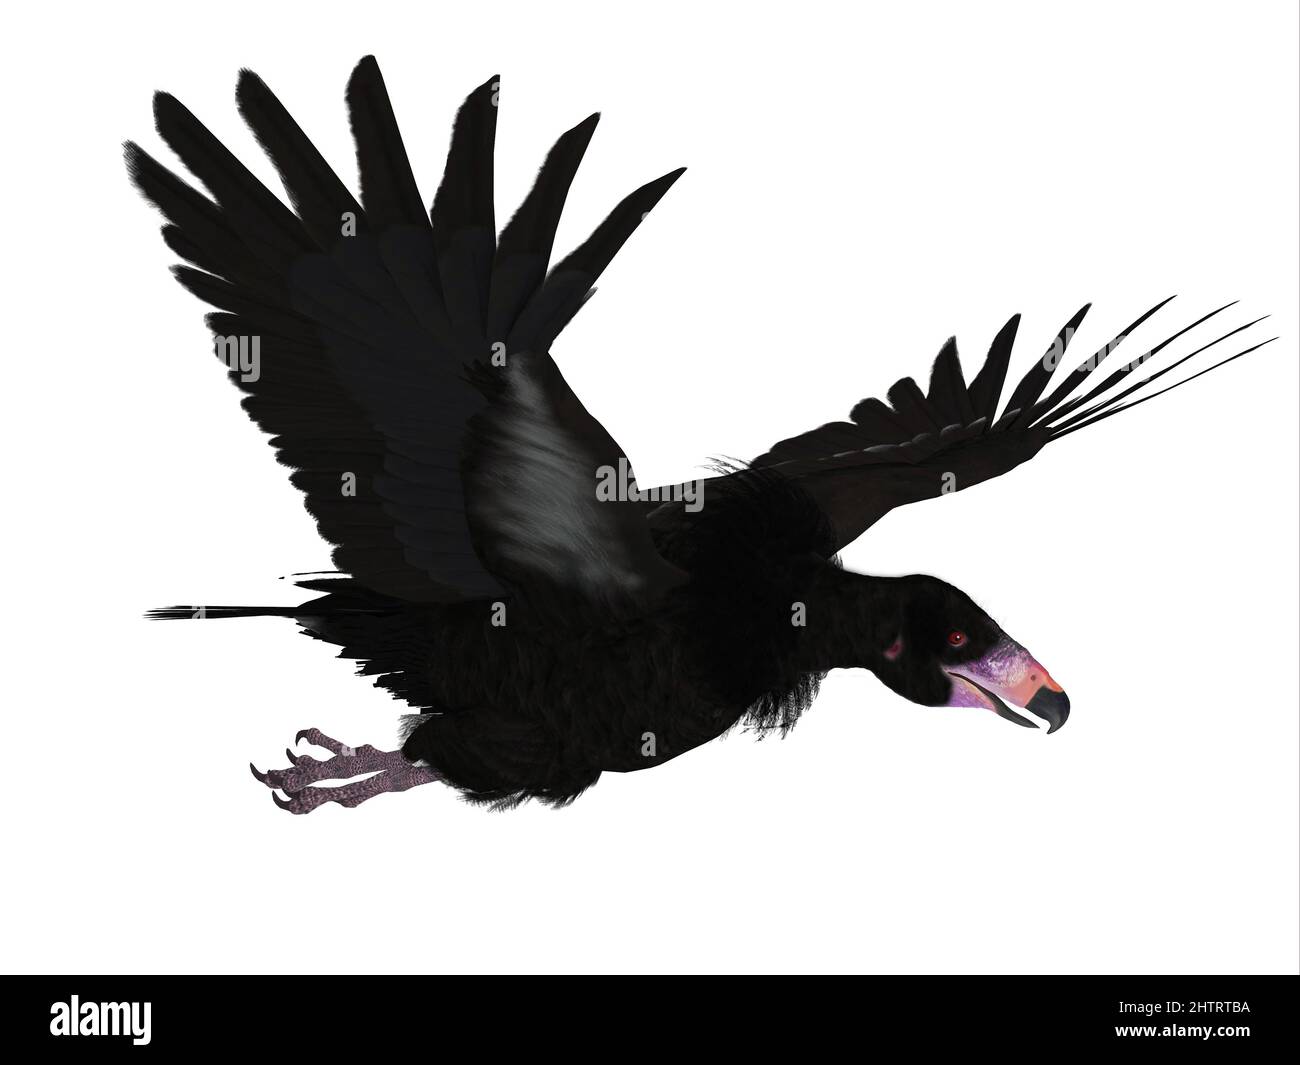 El Thunderbird negro es una enorme criatura legendaria de la cultura india americana. Foto de stock